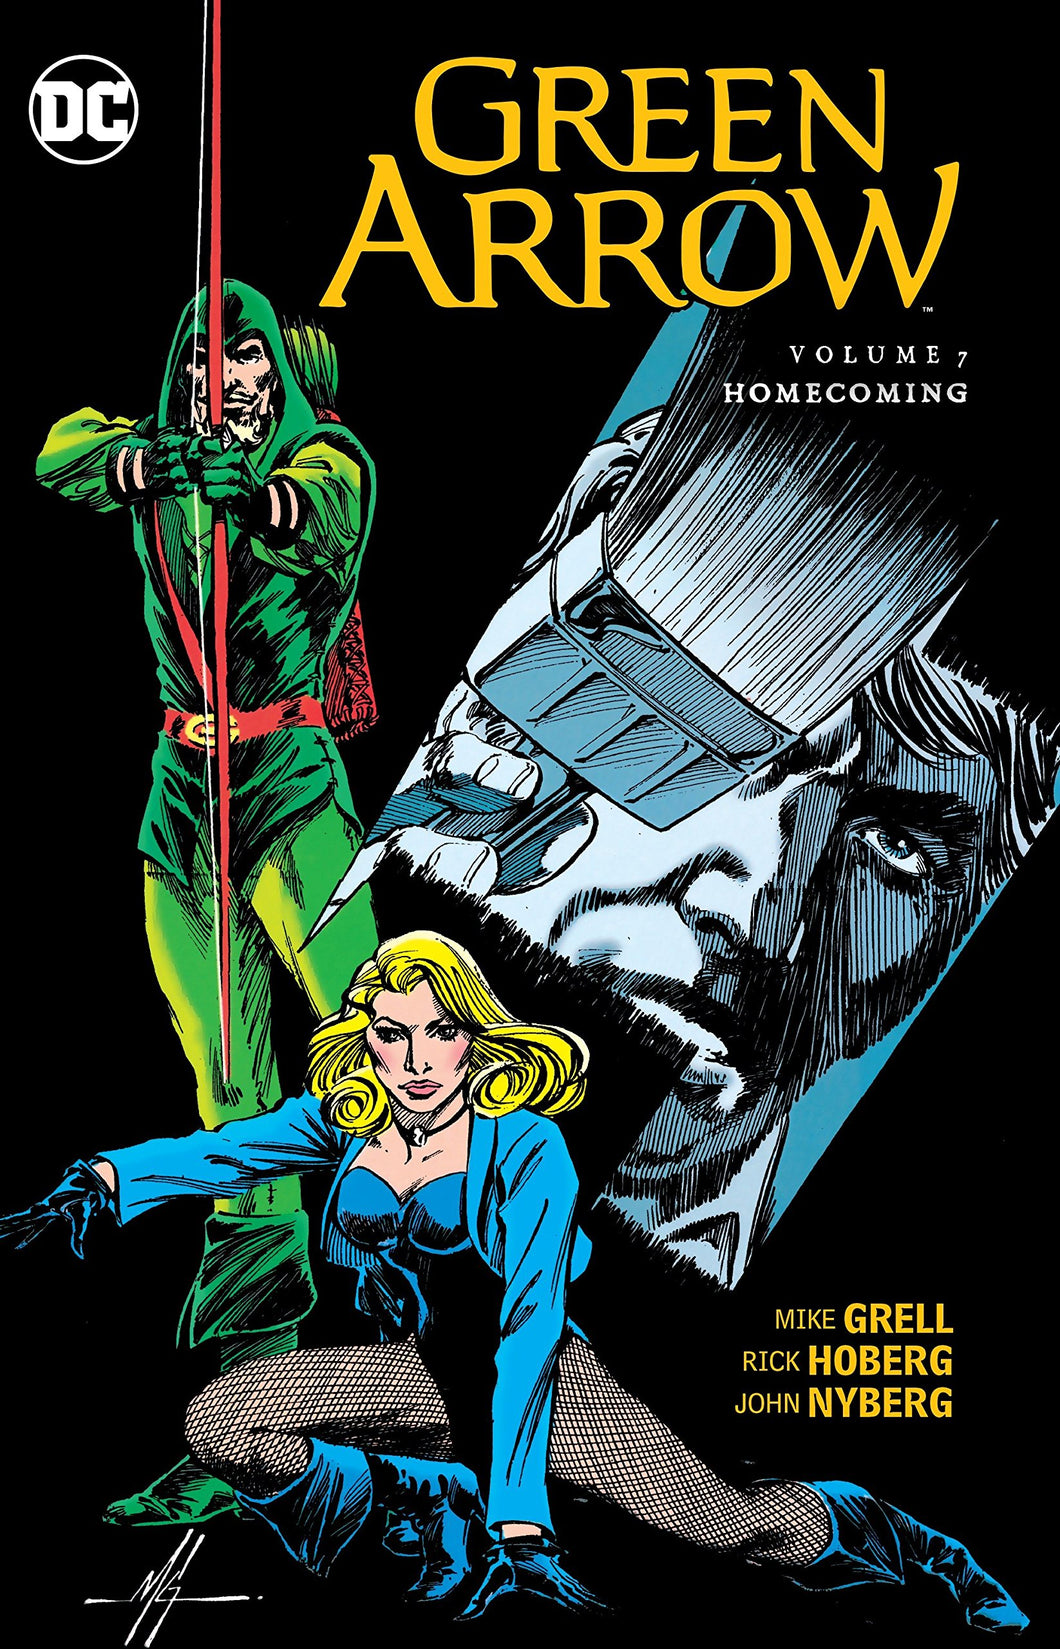 Green Arrow Vol. 7 : Homecoming